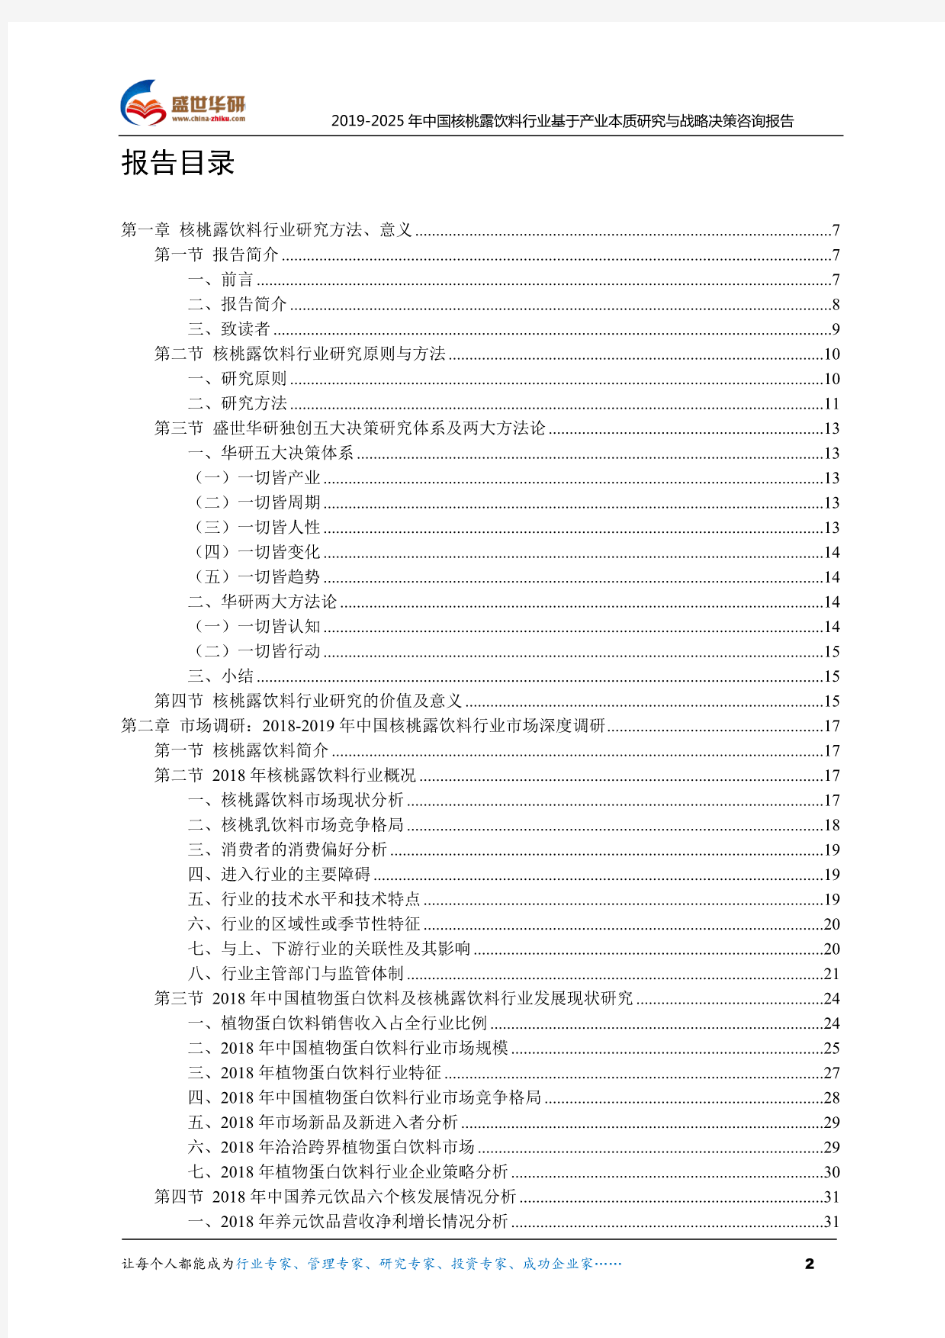 【完整版】2019-2025年中国核桃露饮料行业基于产业本质研究与战略决策咨询报告